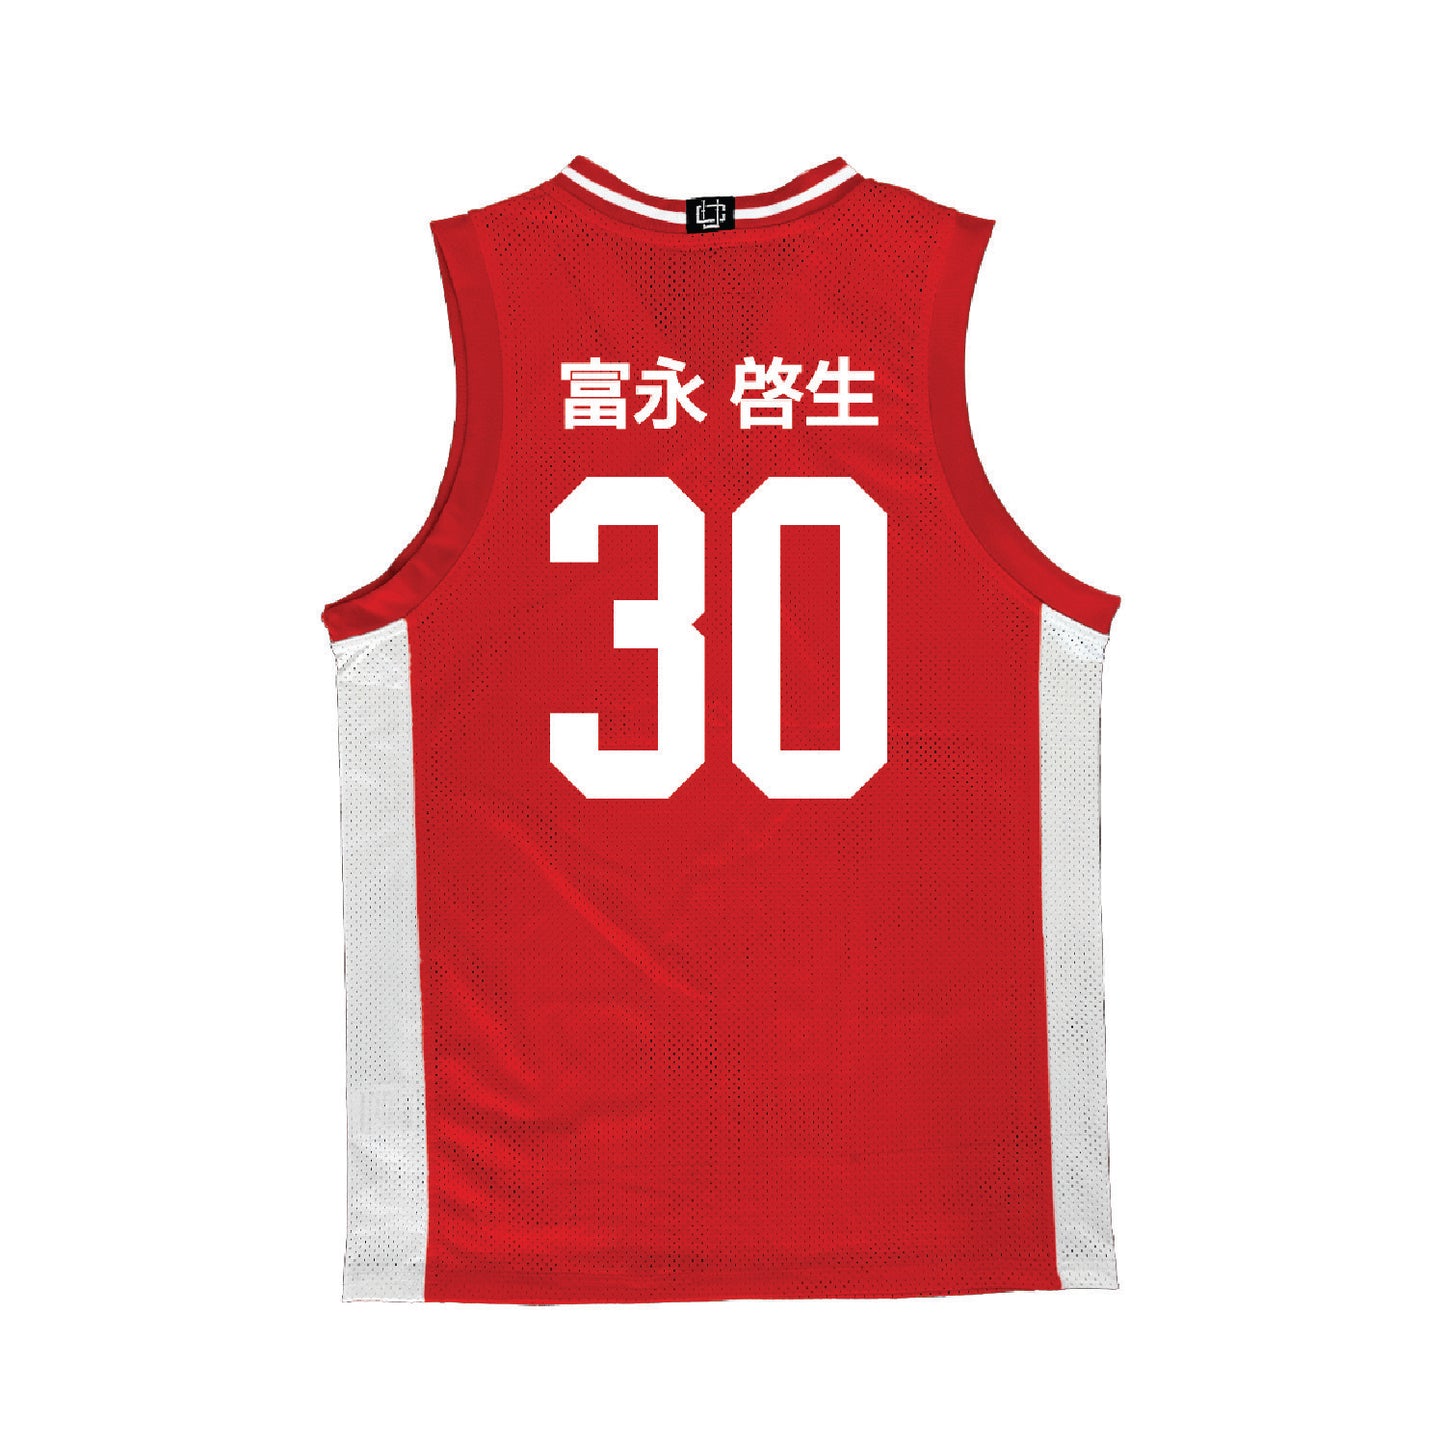 Nebraska Men's Basketball - Japanese Home Jersey - Keisei Tominaga | #30